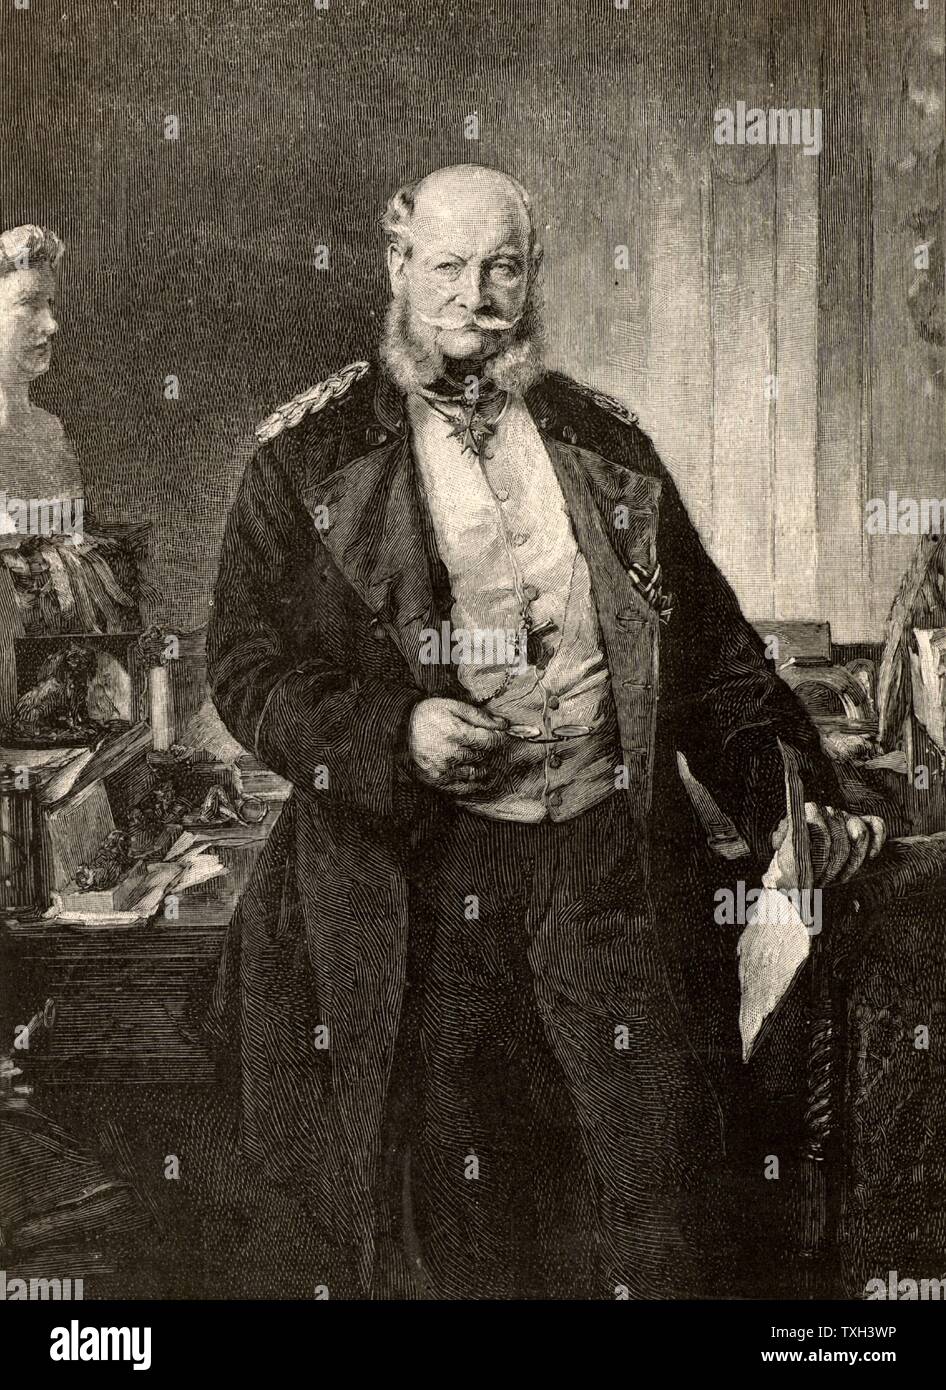 William J, l'empereur allemand Guillaume I (1797-1888) -. septième roi de Prusse et premier empereur de l'Allemagne à partir de 1861. Gravure tirée de "l'English Illustrated Magazine" (Londres, 1888). Banque D'Images